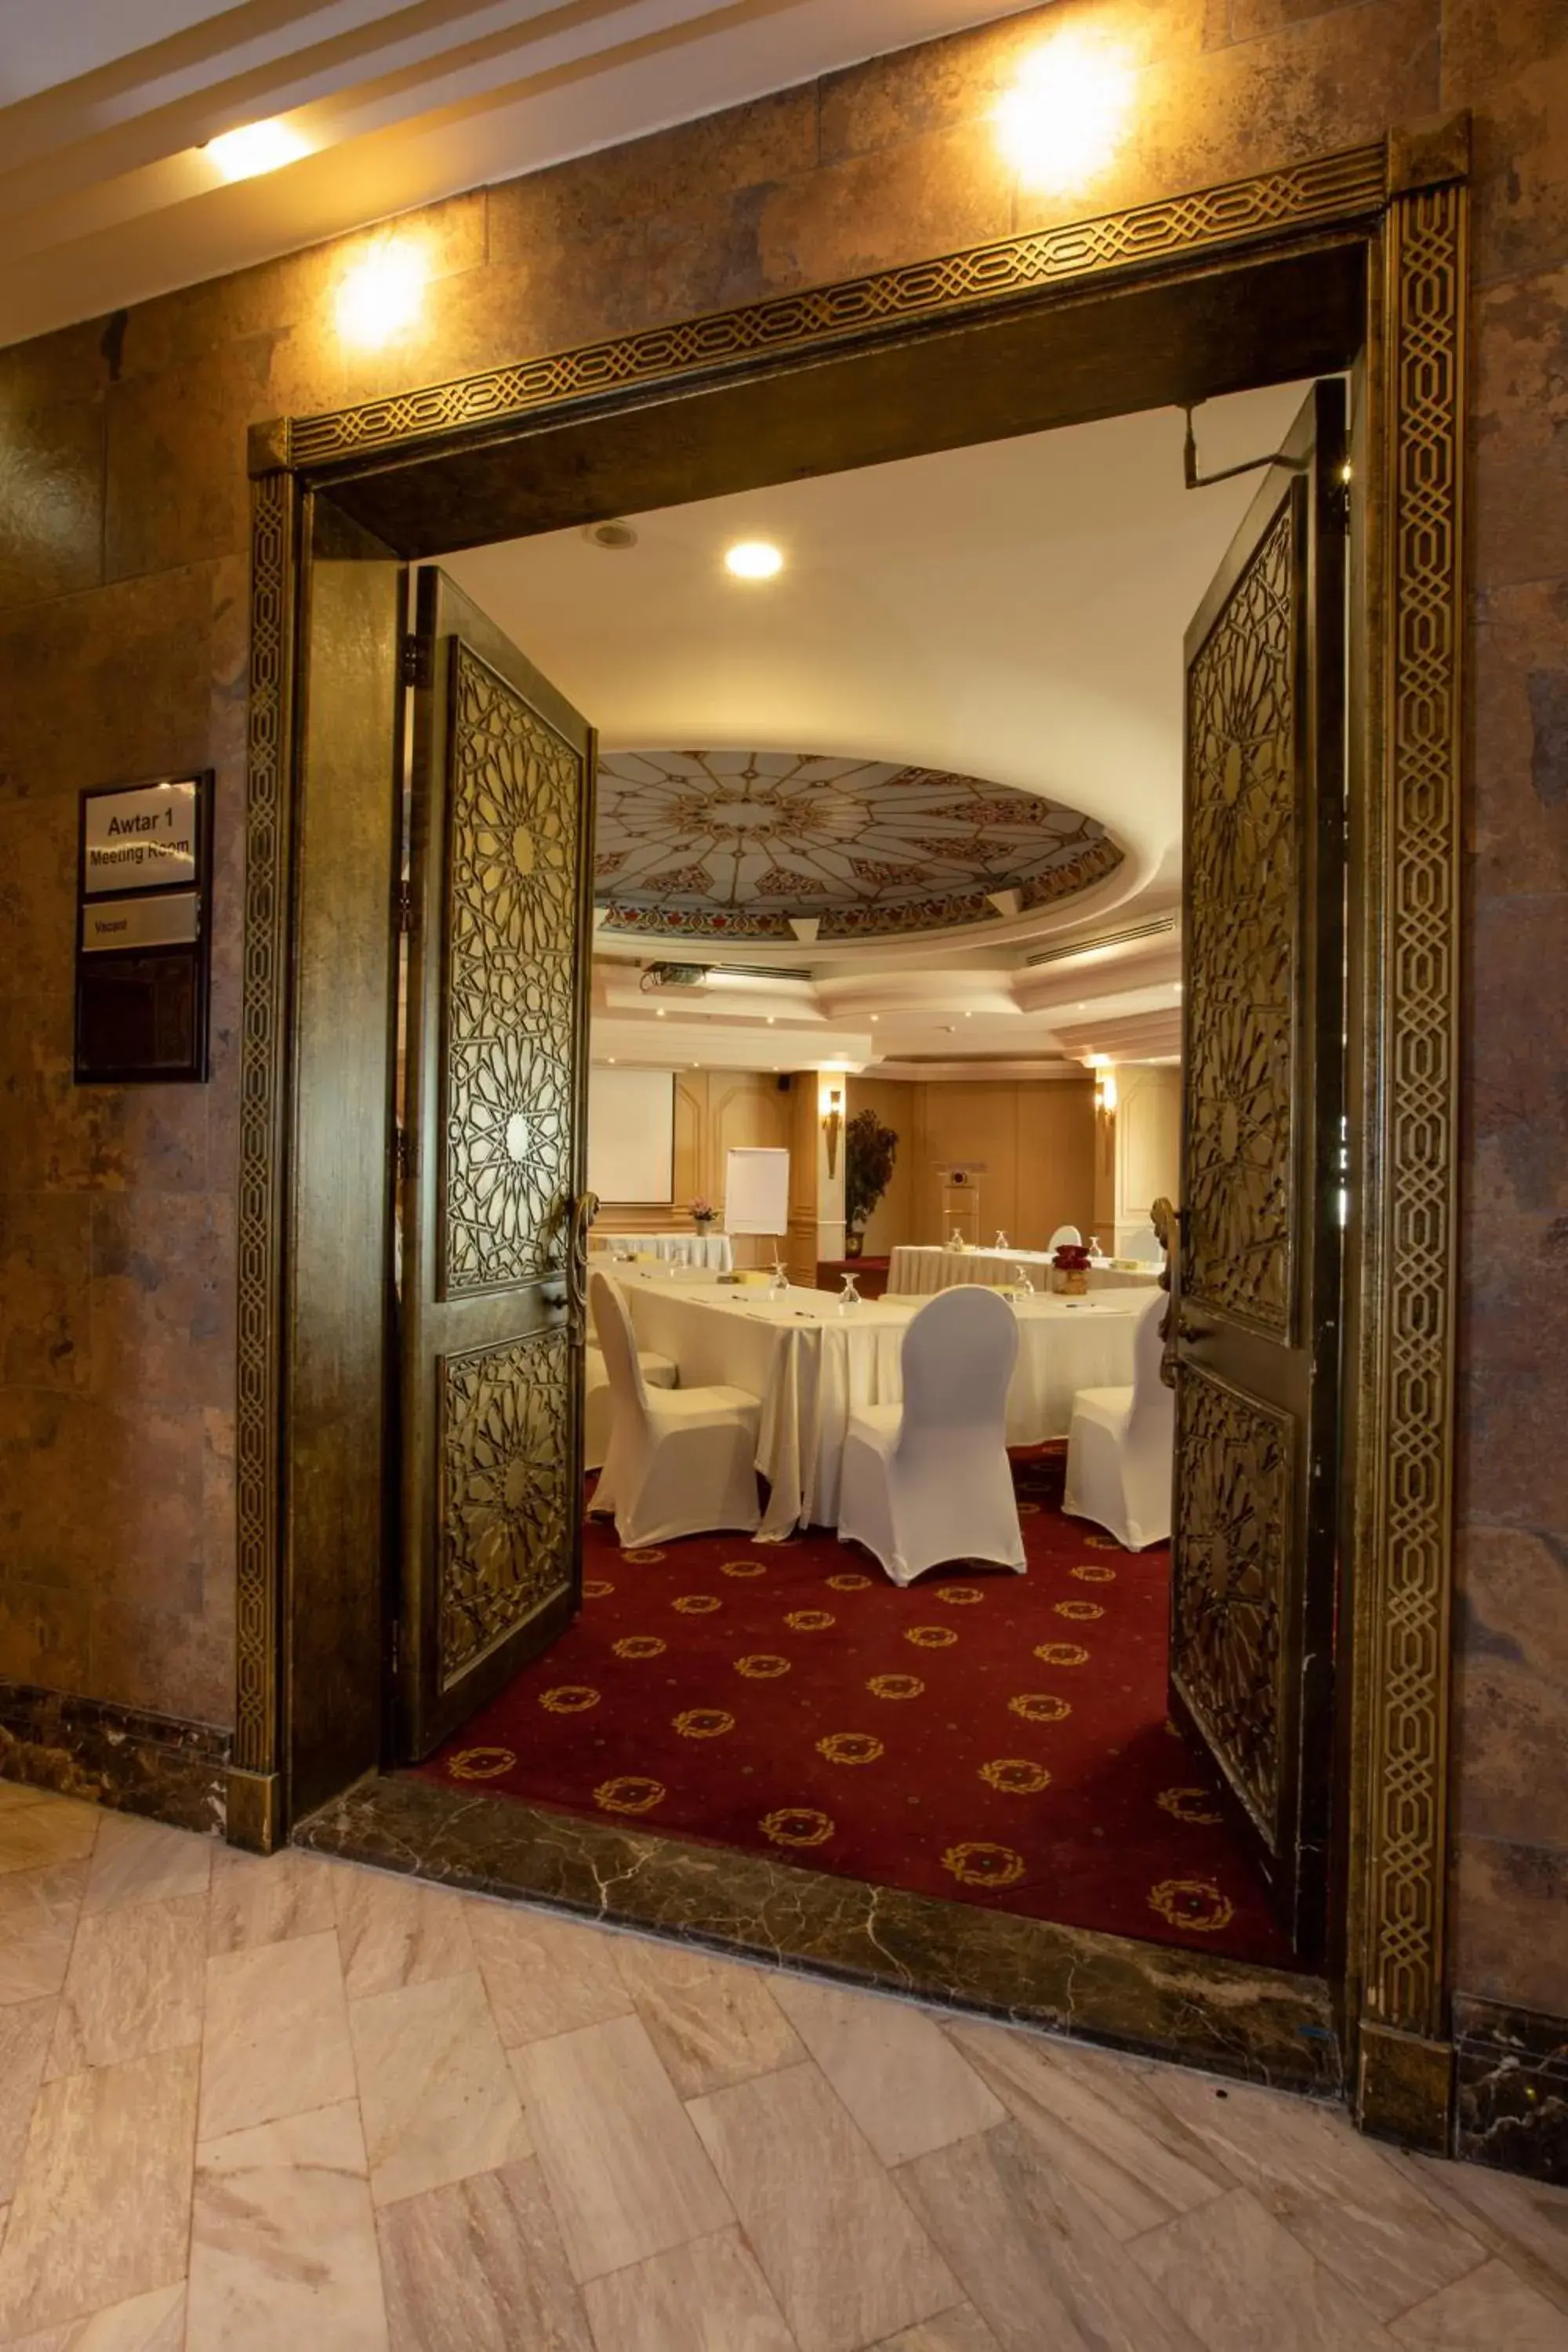 Banquet/Function facilities, Banquet Facilities in Bristol Amman Hotel